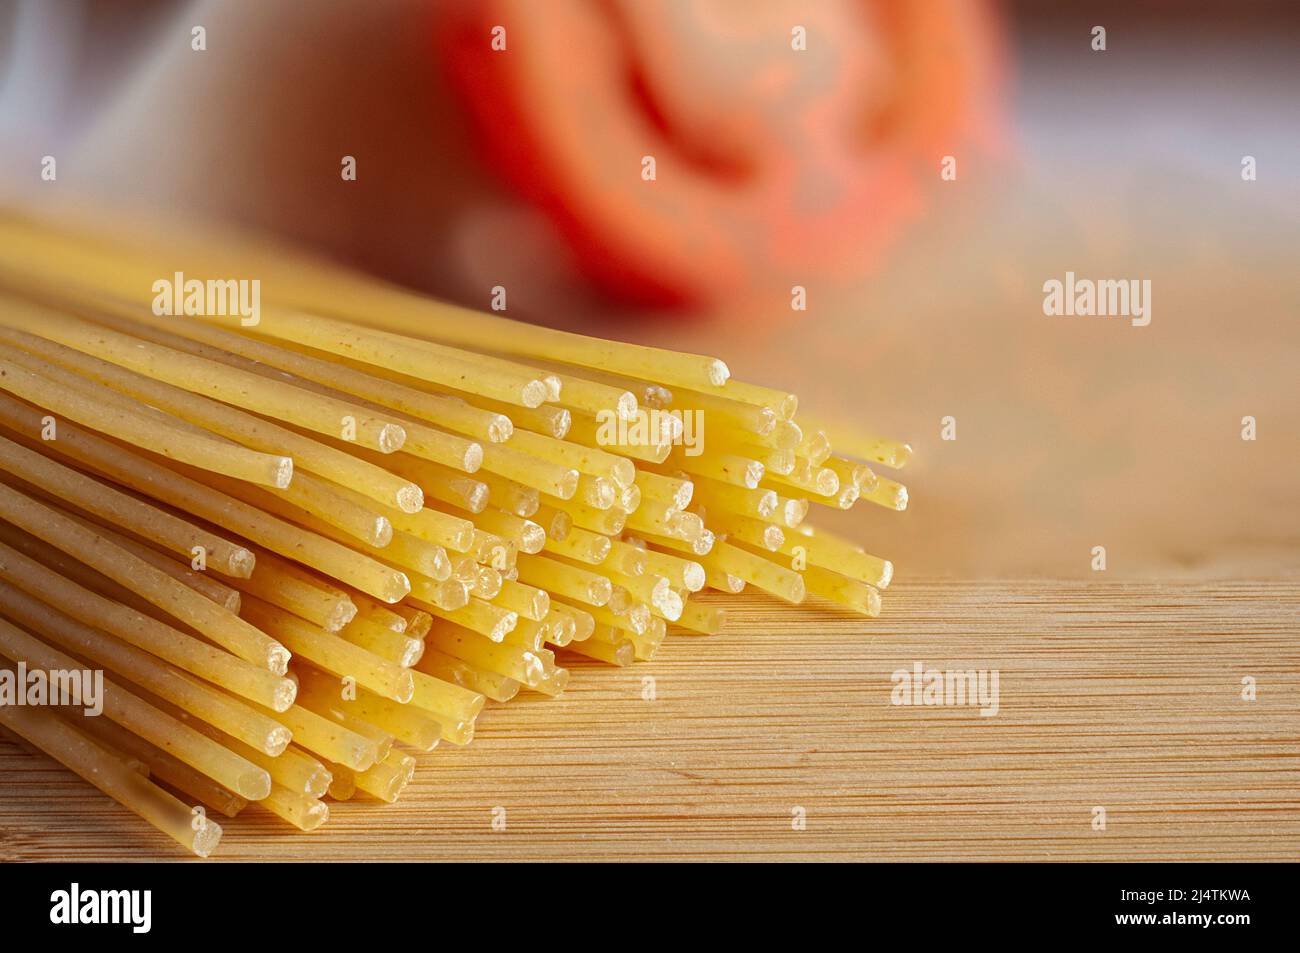 Rohe oder ungekochte Pasta mit einer roten, verschwommenen Tomate im Hintergrund und auf einem Schneidebrett, Seitenansicht, horizontale Aufnahme. Stockfoto